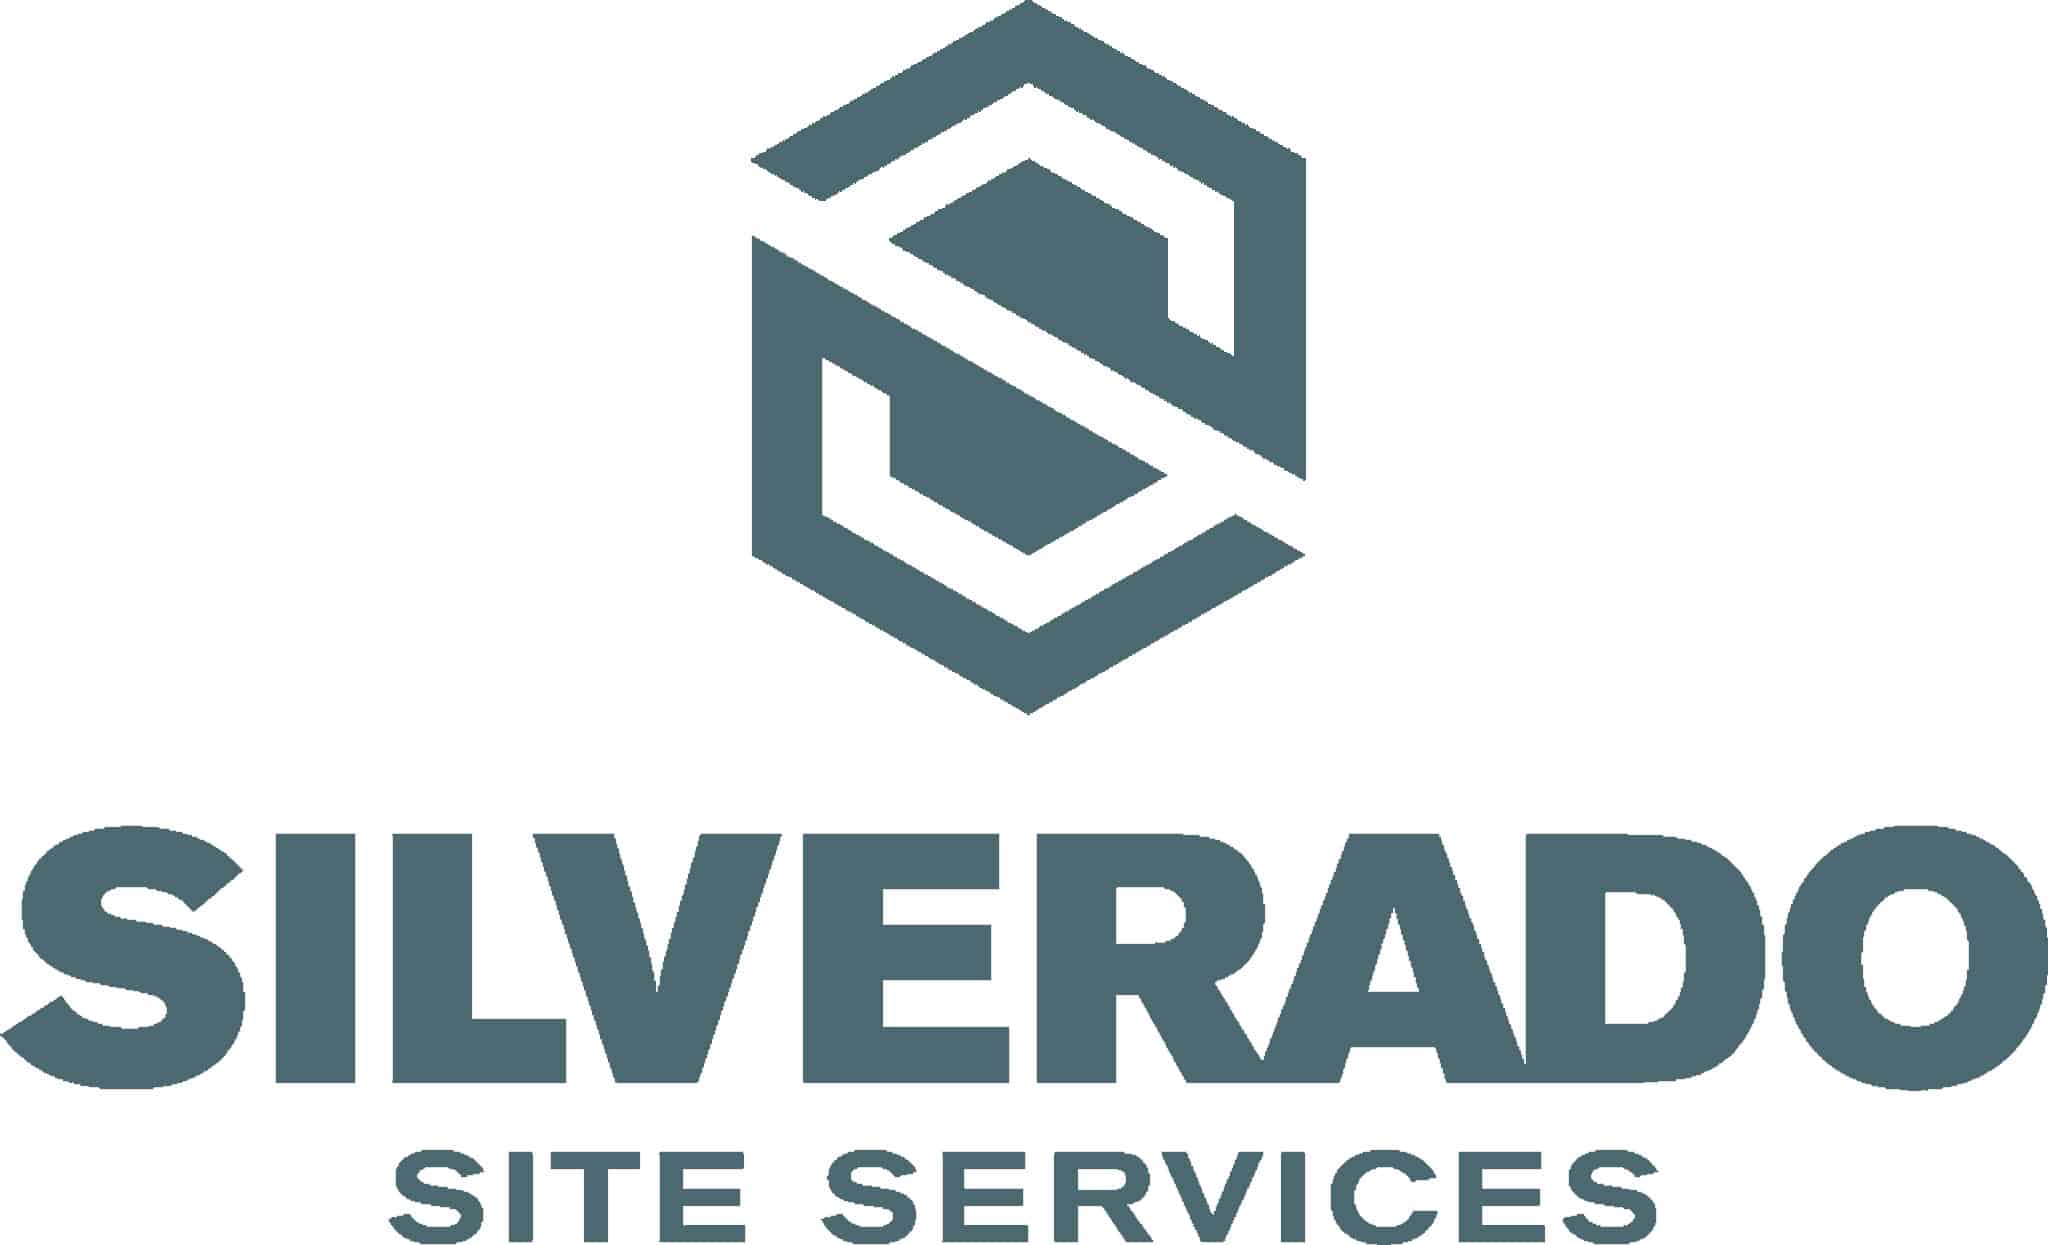 Silverado Site Services